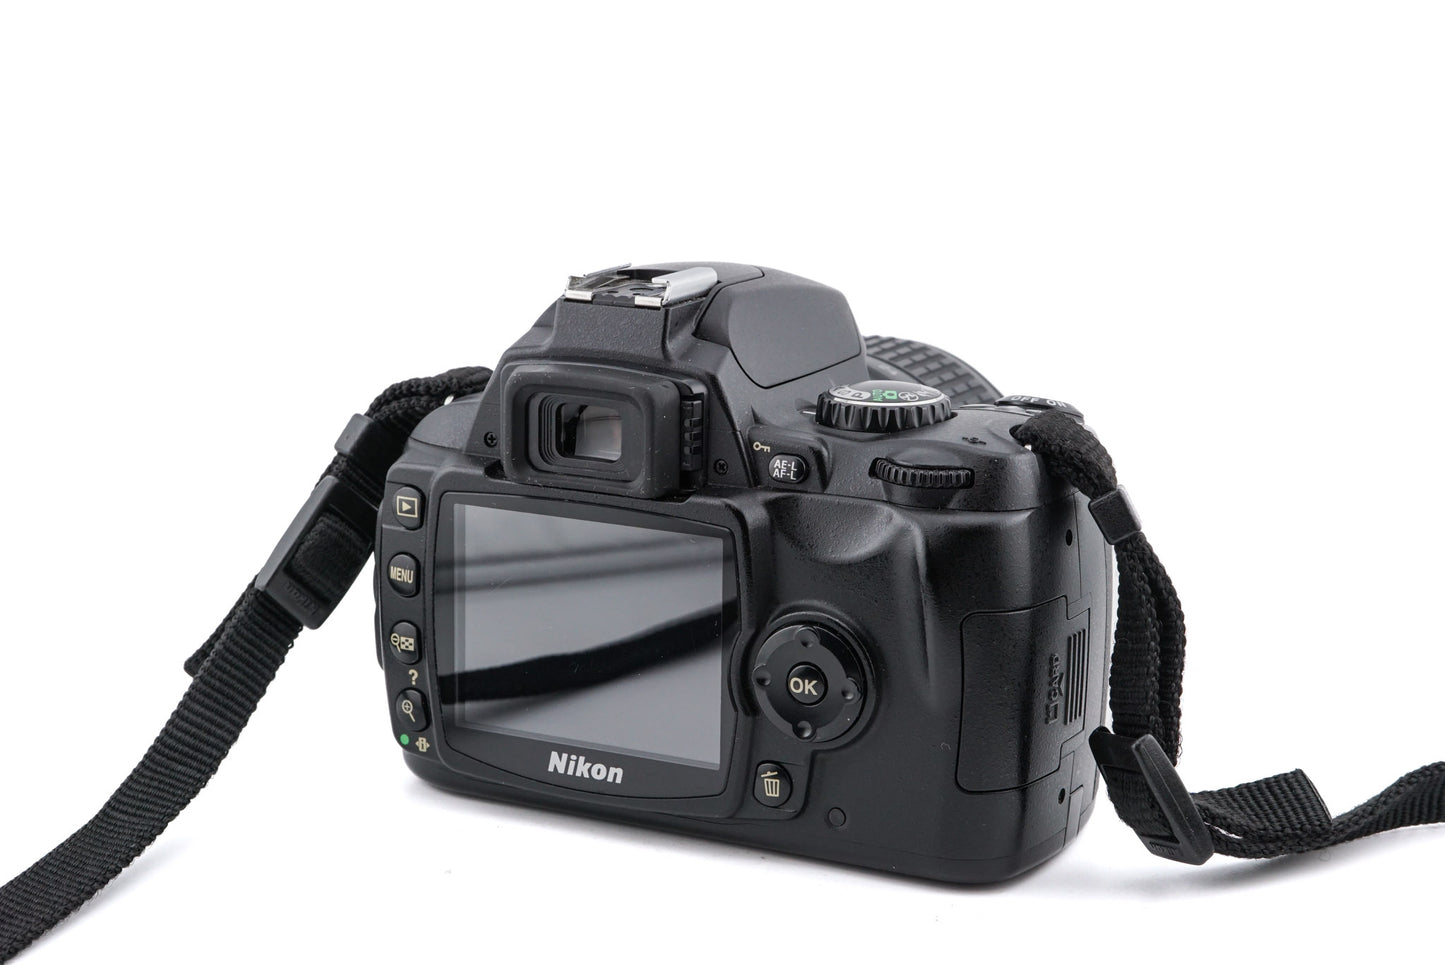 Nikon D40x + 18-55mm f3.5-5.6 AF-S Nikkor G ED II